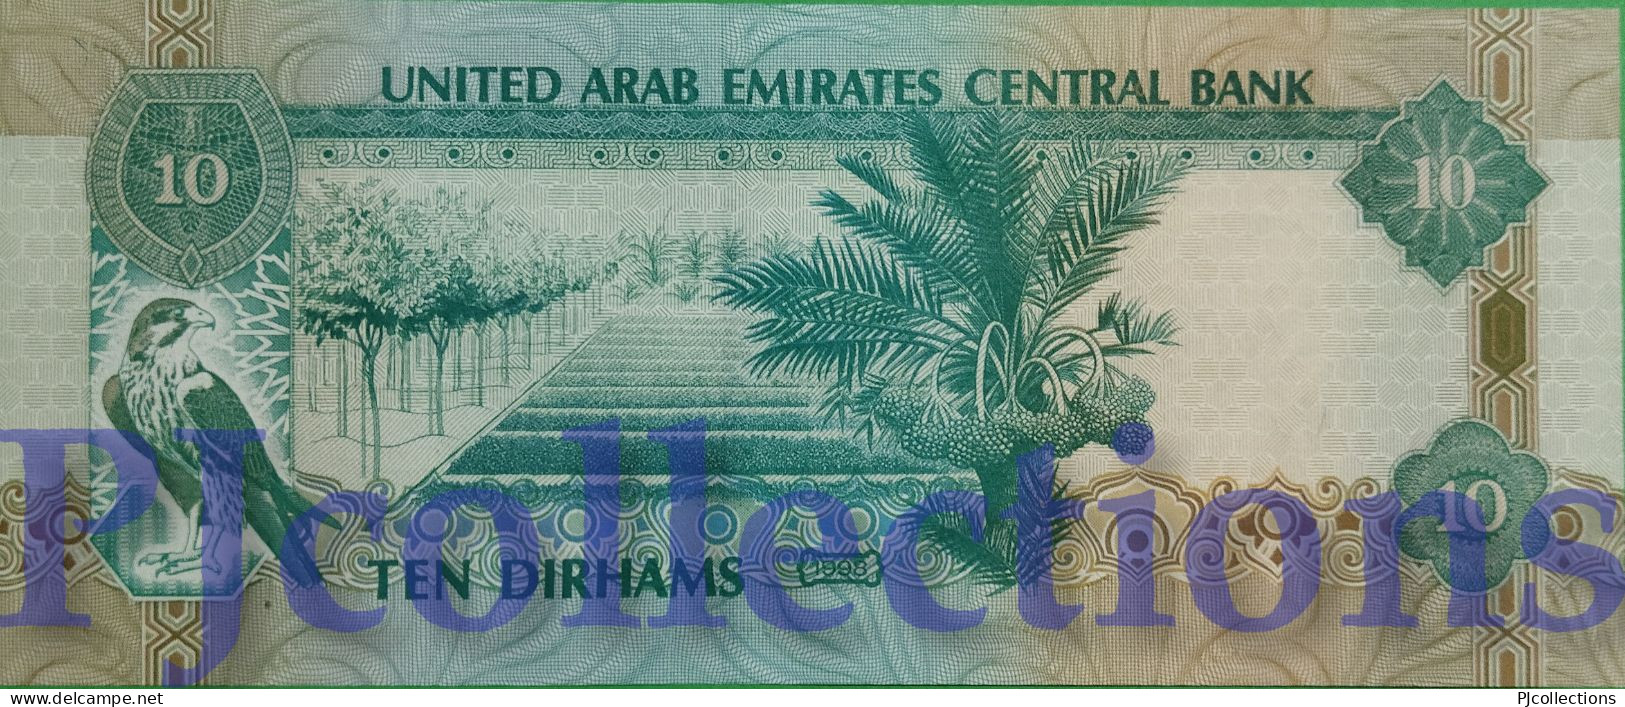 UNITED ARAB EMIRATES 10 DIRHAMS 1998 PICK 20a AU/UNC - Ver. Arab. Emirate